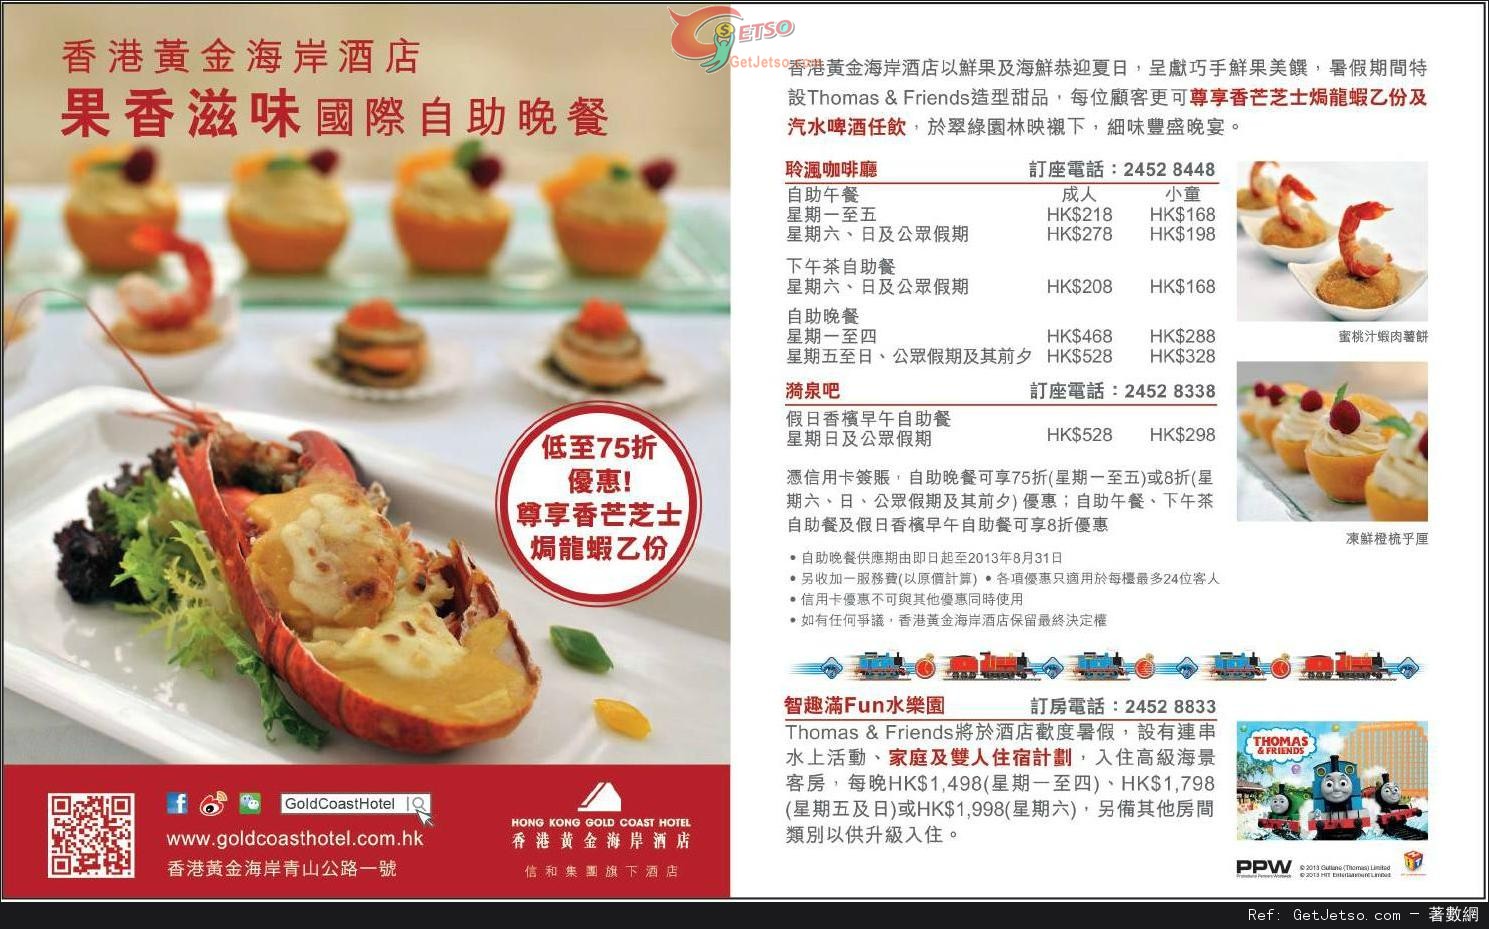 信用卡享香港黃金海岸酒店果香滋味國際自助晚餐低至75折優惠(至13年8月31日)圖片1